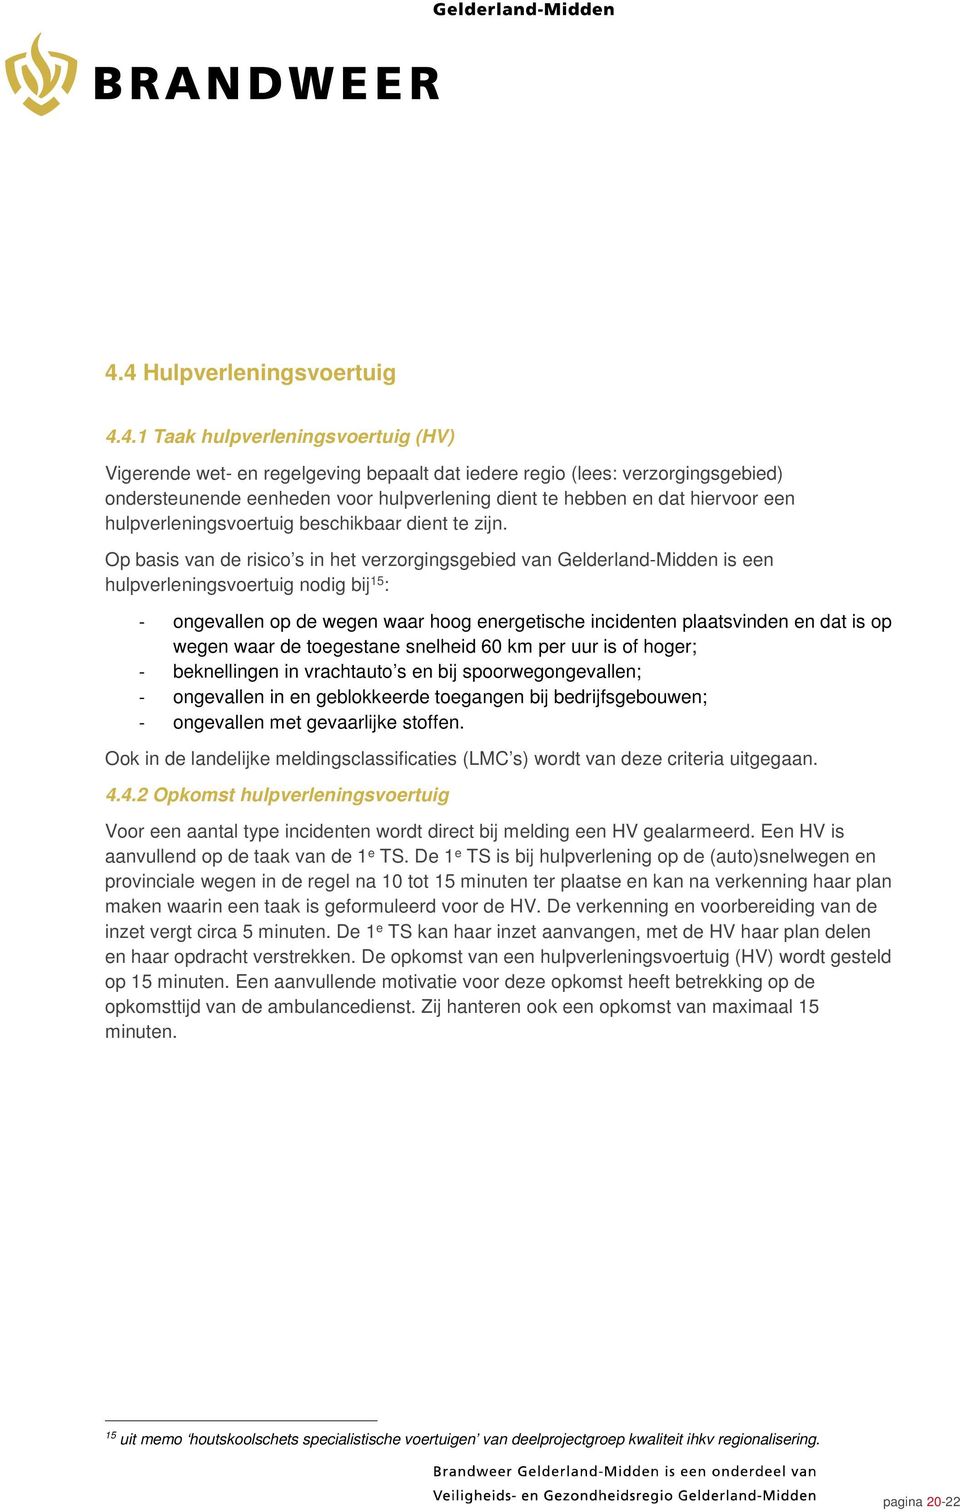 Op basis van de risico s in het verzorgingsgebied van Gelderland-Midden is een hulpverleningsvoertuig nodig bij 15 : - ongevallen op de wegen waar hoog energetische incidenten plaatsvinden en dat is